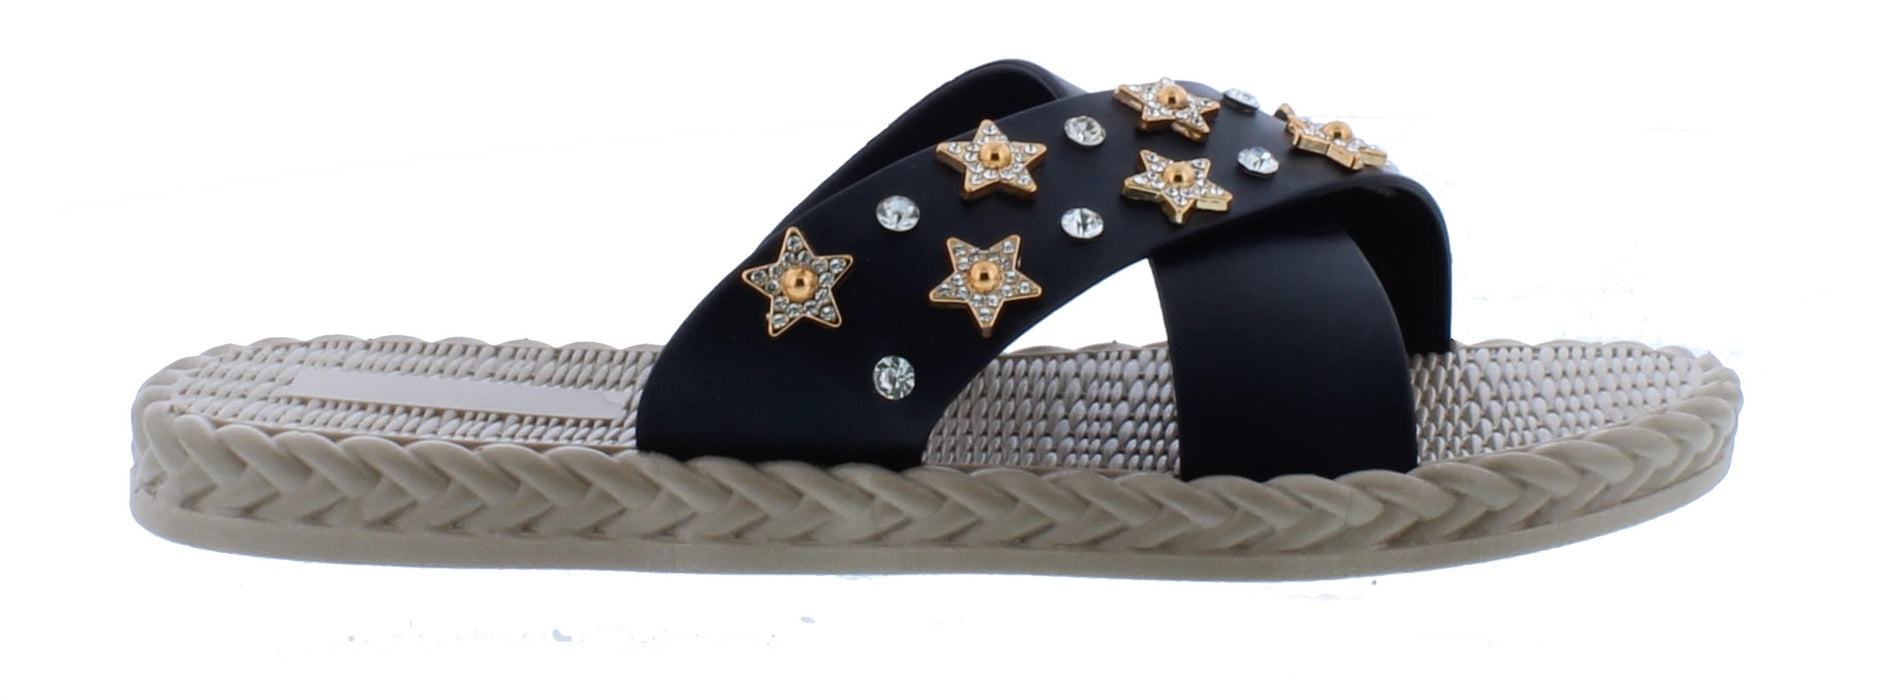 Women Slip On Rubber Sandal with Stars